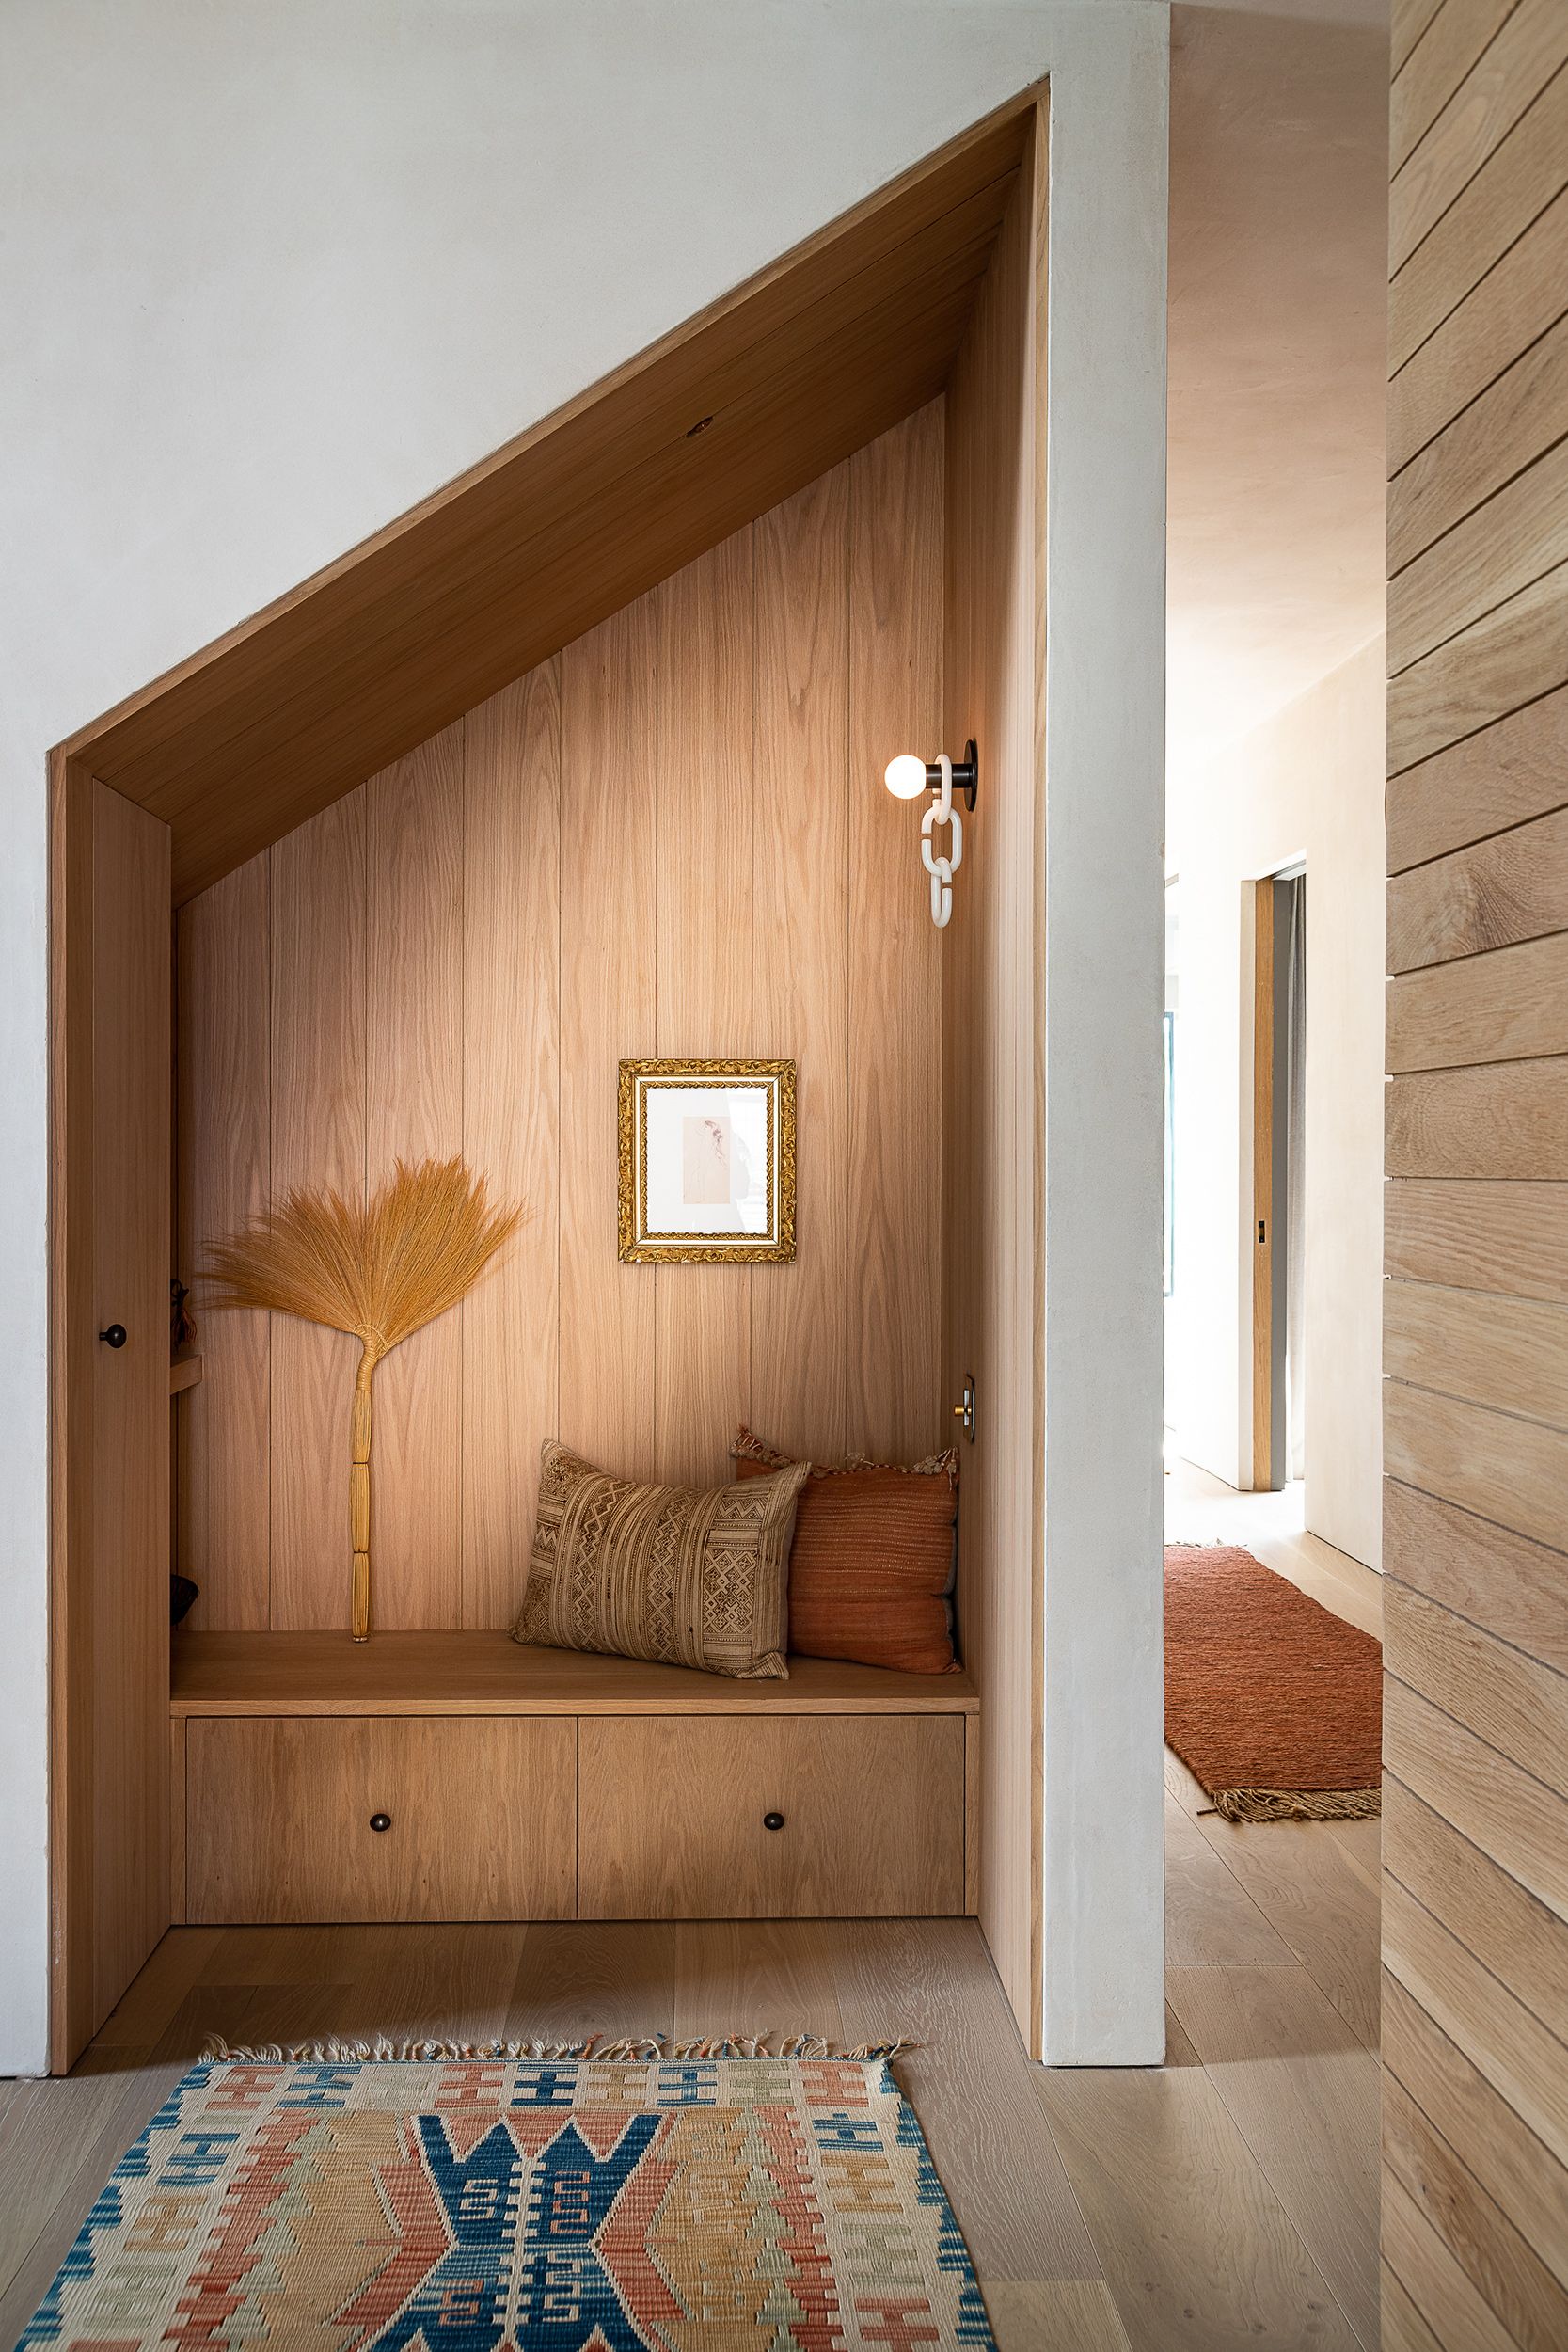 Una casa de madera de diseño moderno con piscina y porche